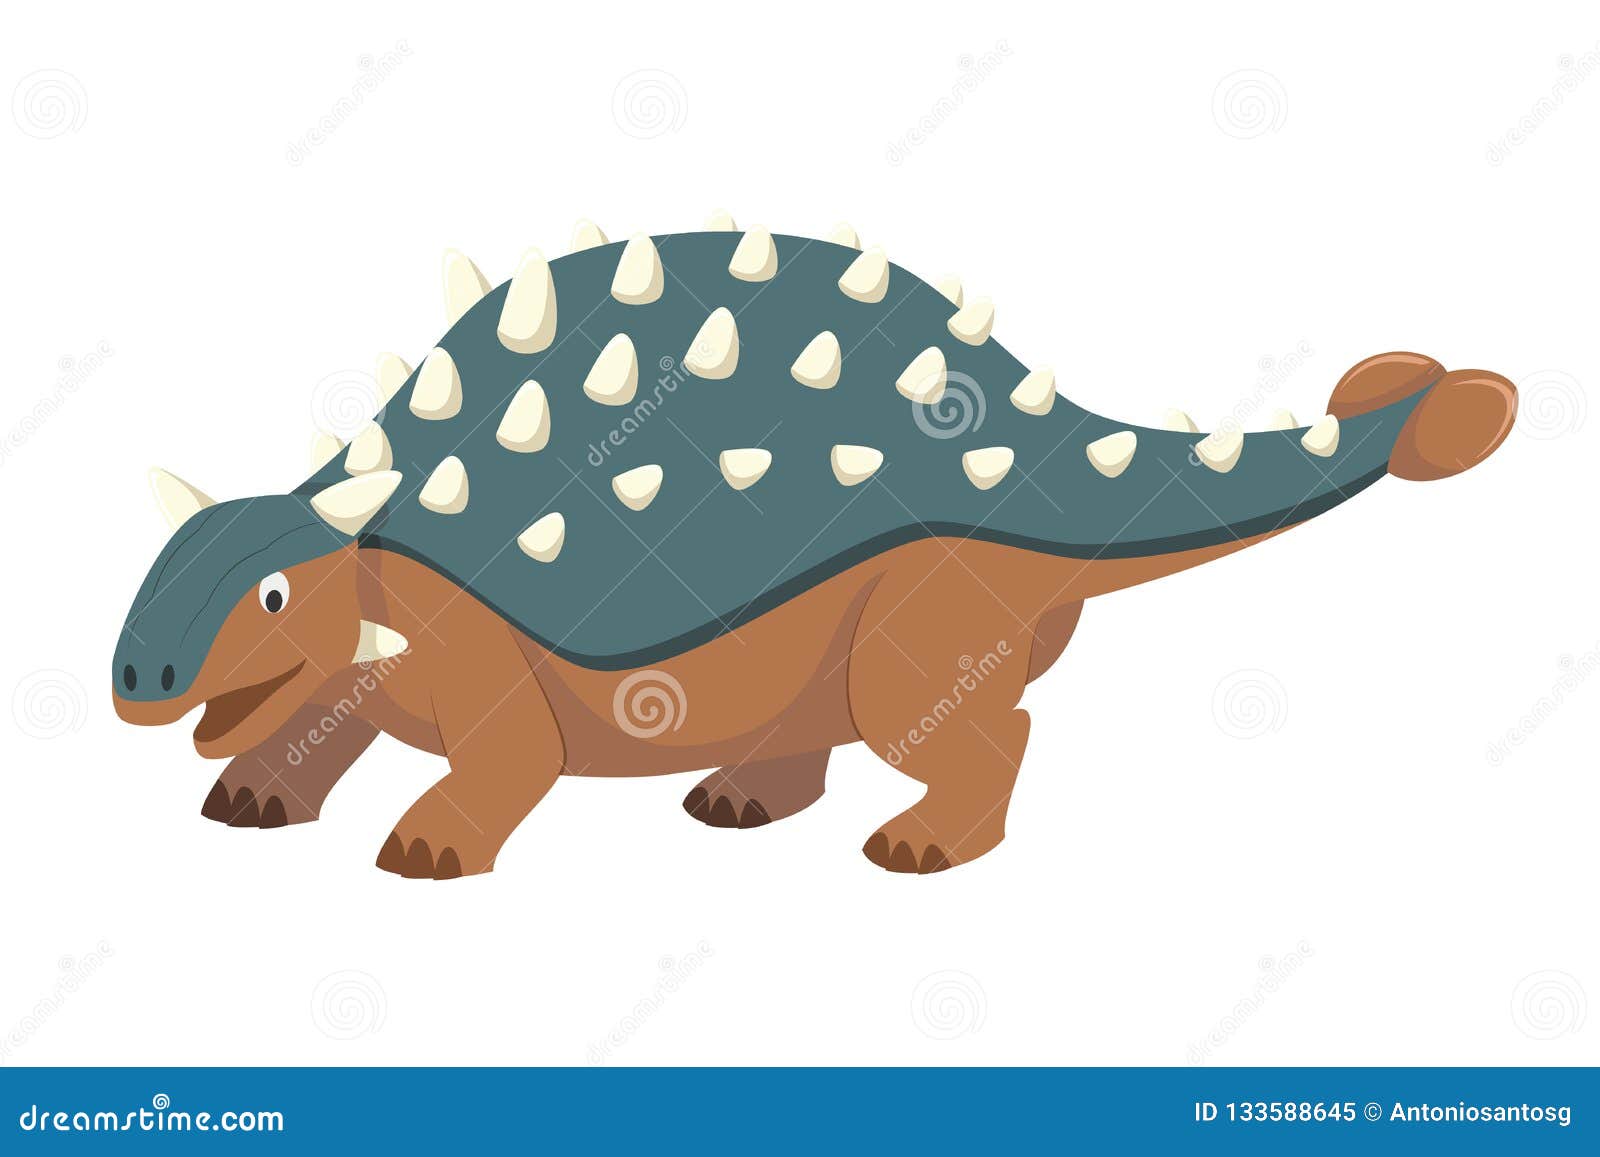 Анкилозавр динозавр вектор